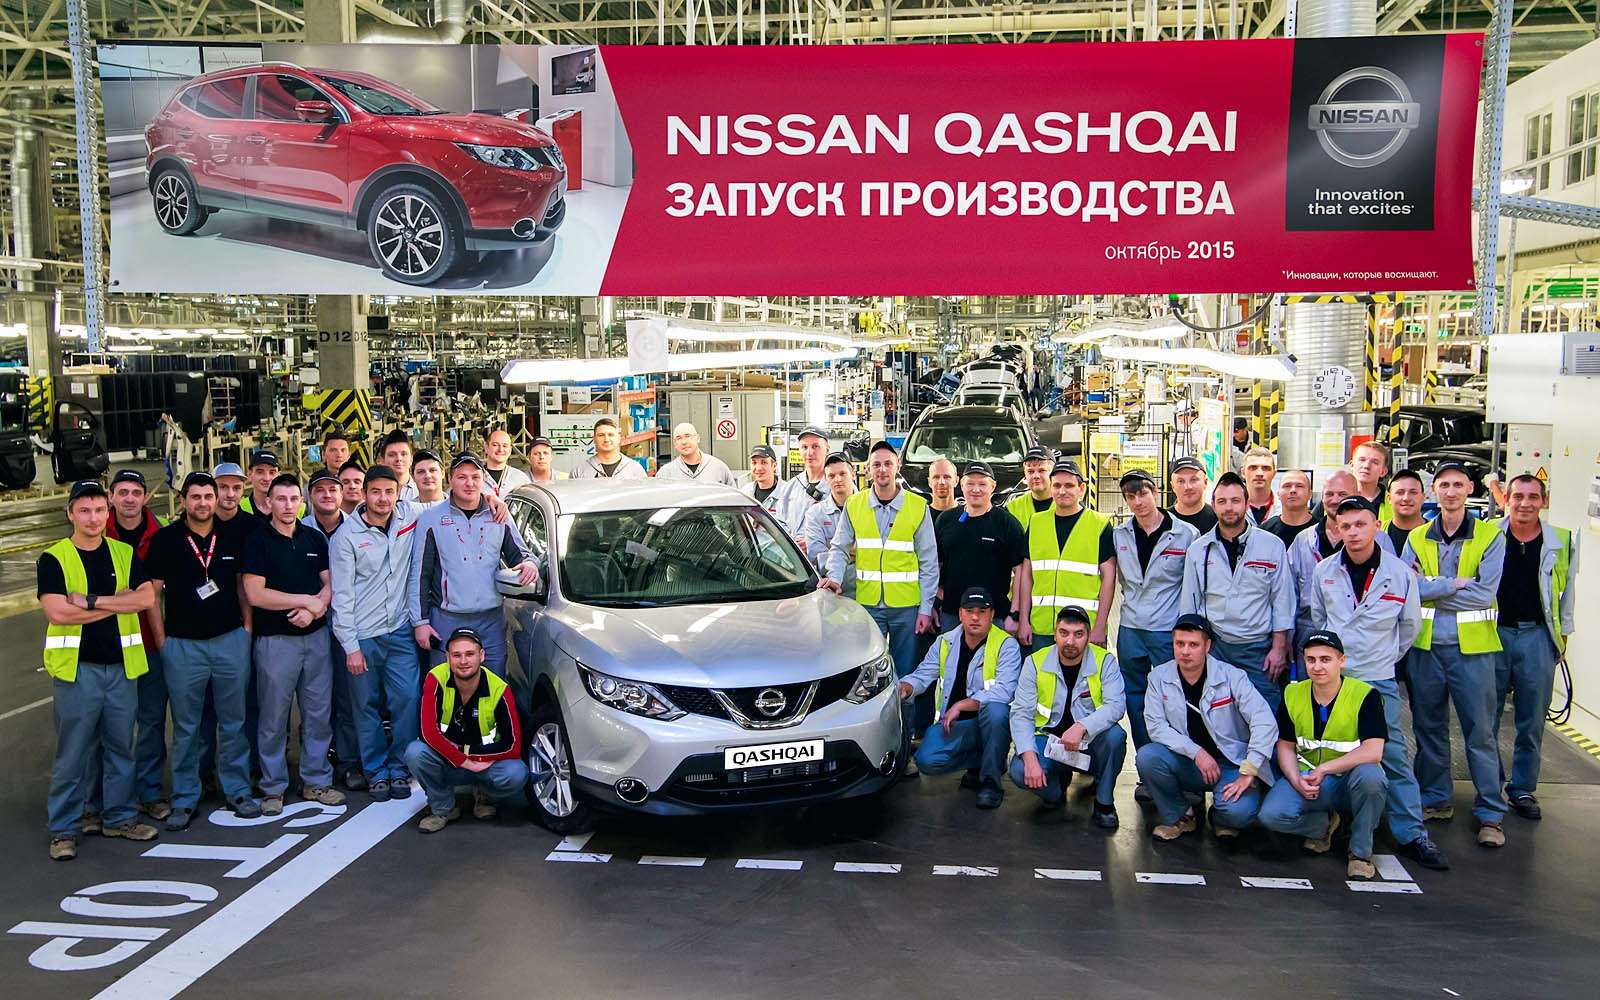 Производство Кашкаев второго поколения для России и стран СНГ открыли в Санкт-Петербурге в 2015 году.